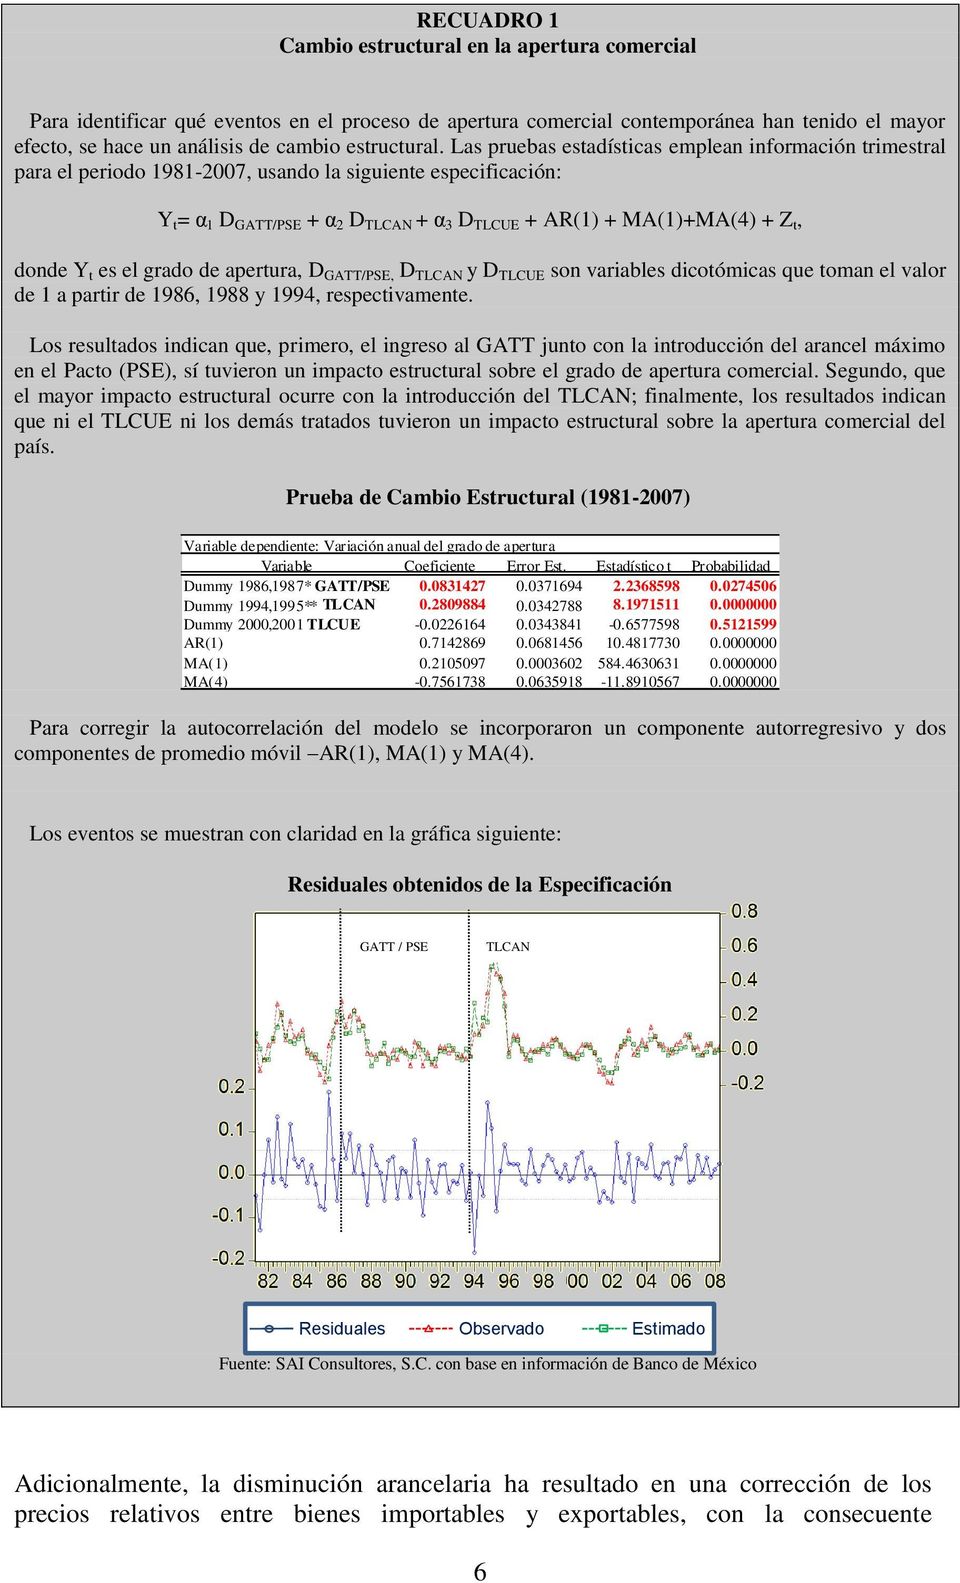 Las pruebas estadísticas emplean información trimestral para el periodo 1981-2007, usando la siguiente especificación: Y t = α 1 D GATT/PSE + α 2 D TLCAN + α 3 D TLCUE + AR(1) + MA(1)+MA(4) + Z t,